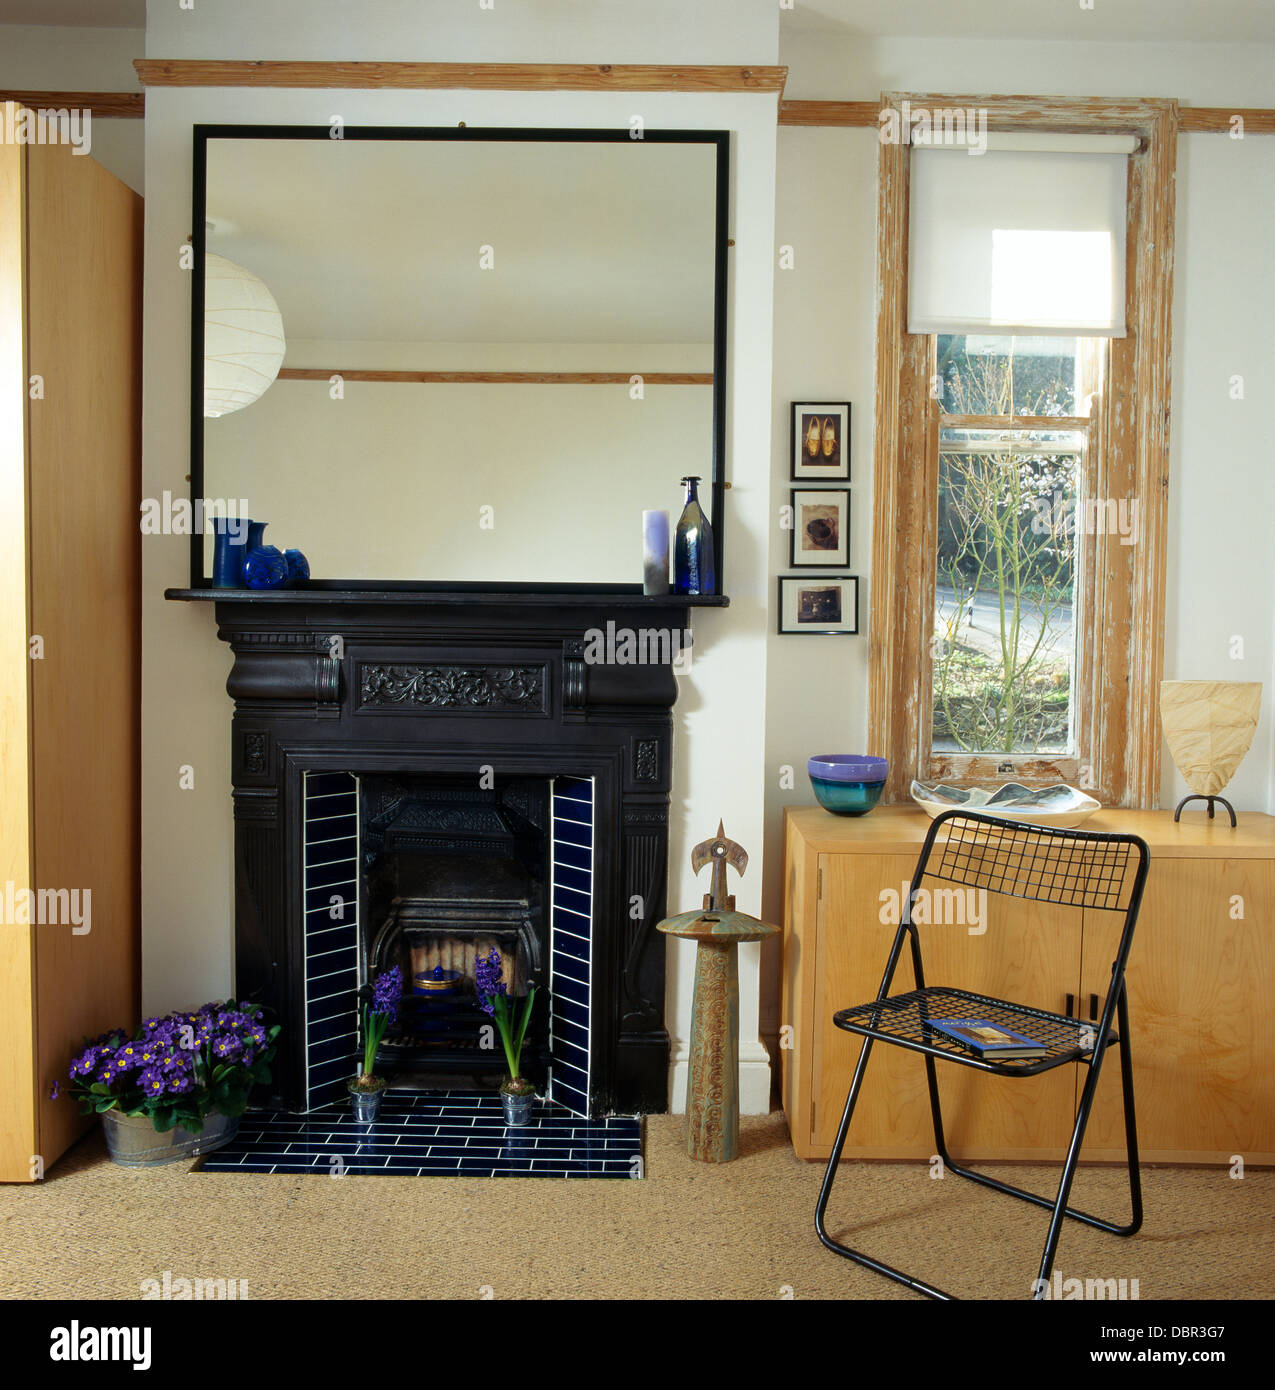 Grande specchio sopra il nero ghisa Edwardian caminetto nella sala da pranzo moderna con sedia in metallo e finestra stretta con tenda bianca Foto Stock